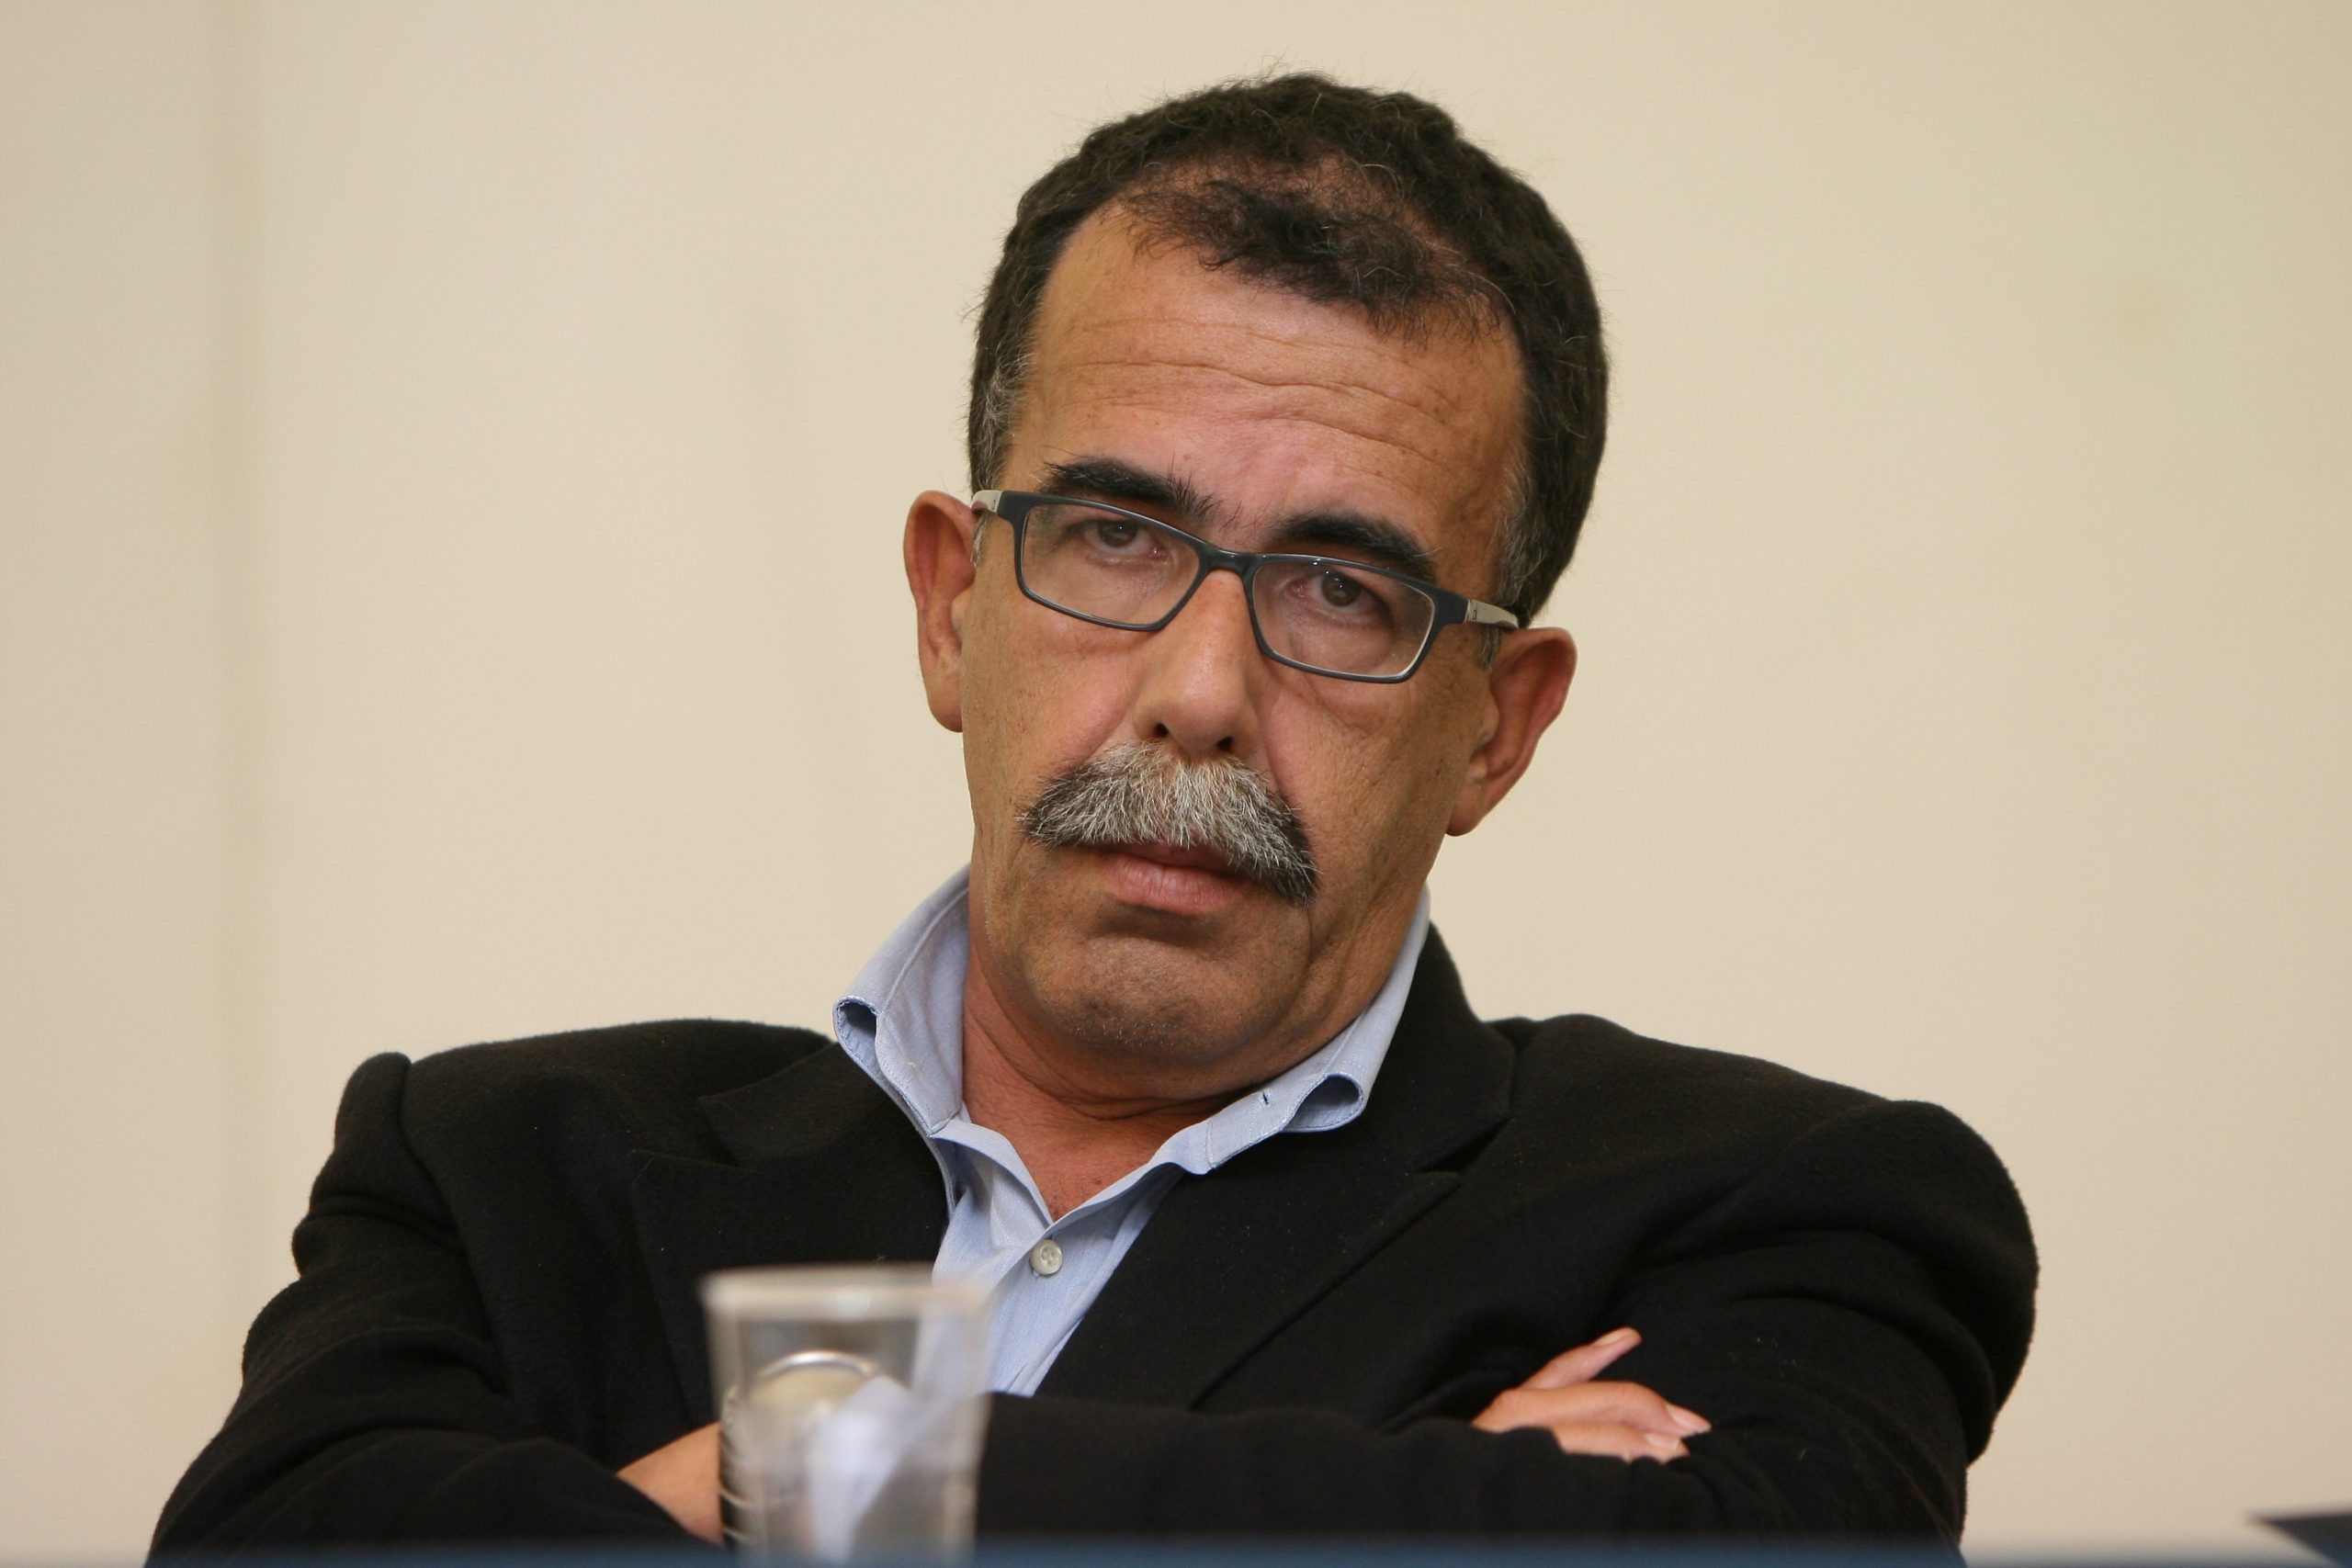 Sandro Ruotolo sotto scorta: il giornalista minacciato dal boss Michele Zagaria